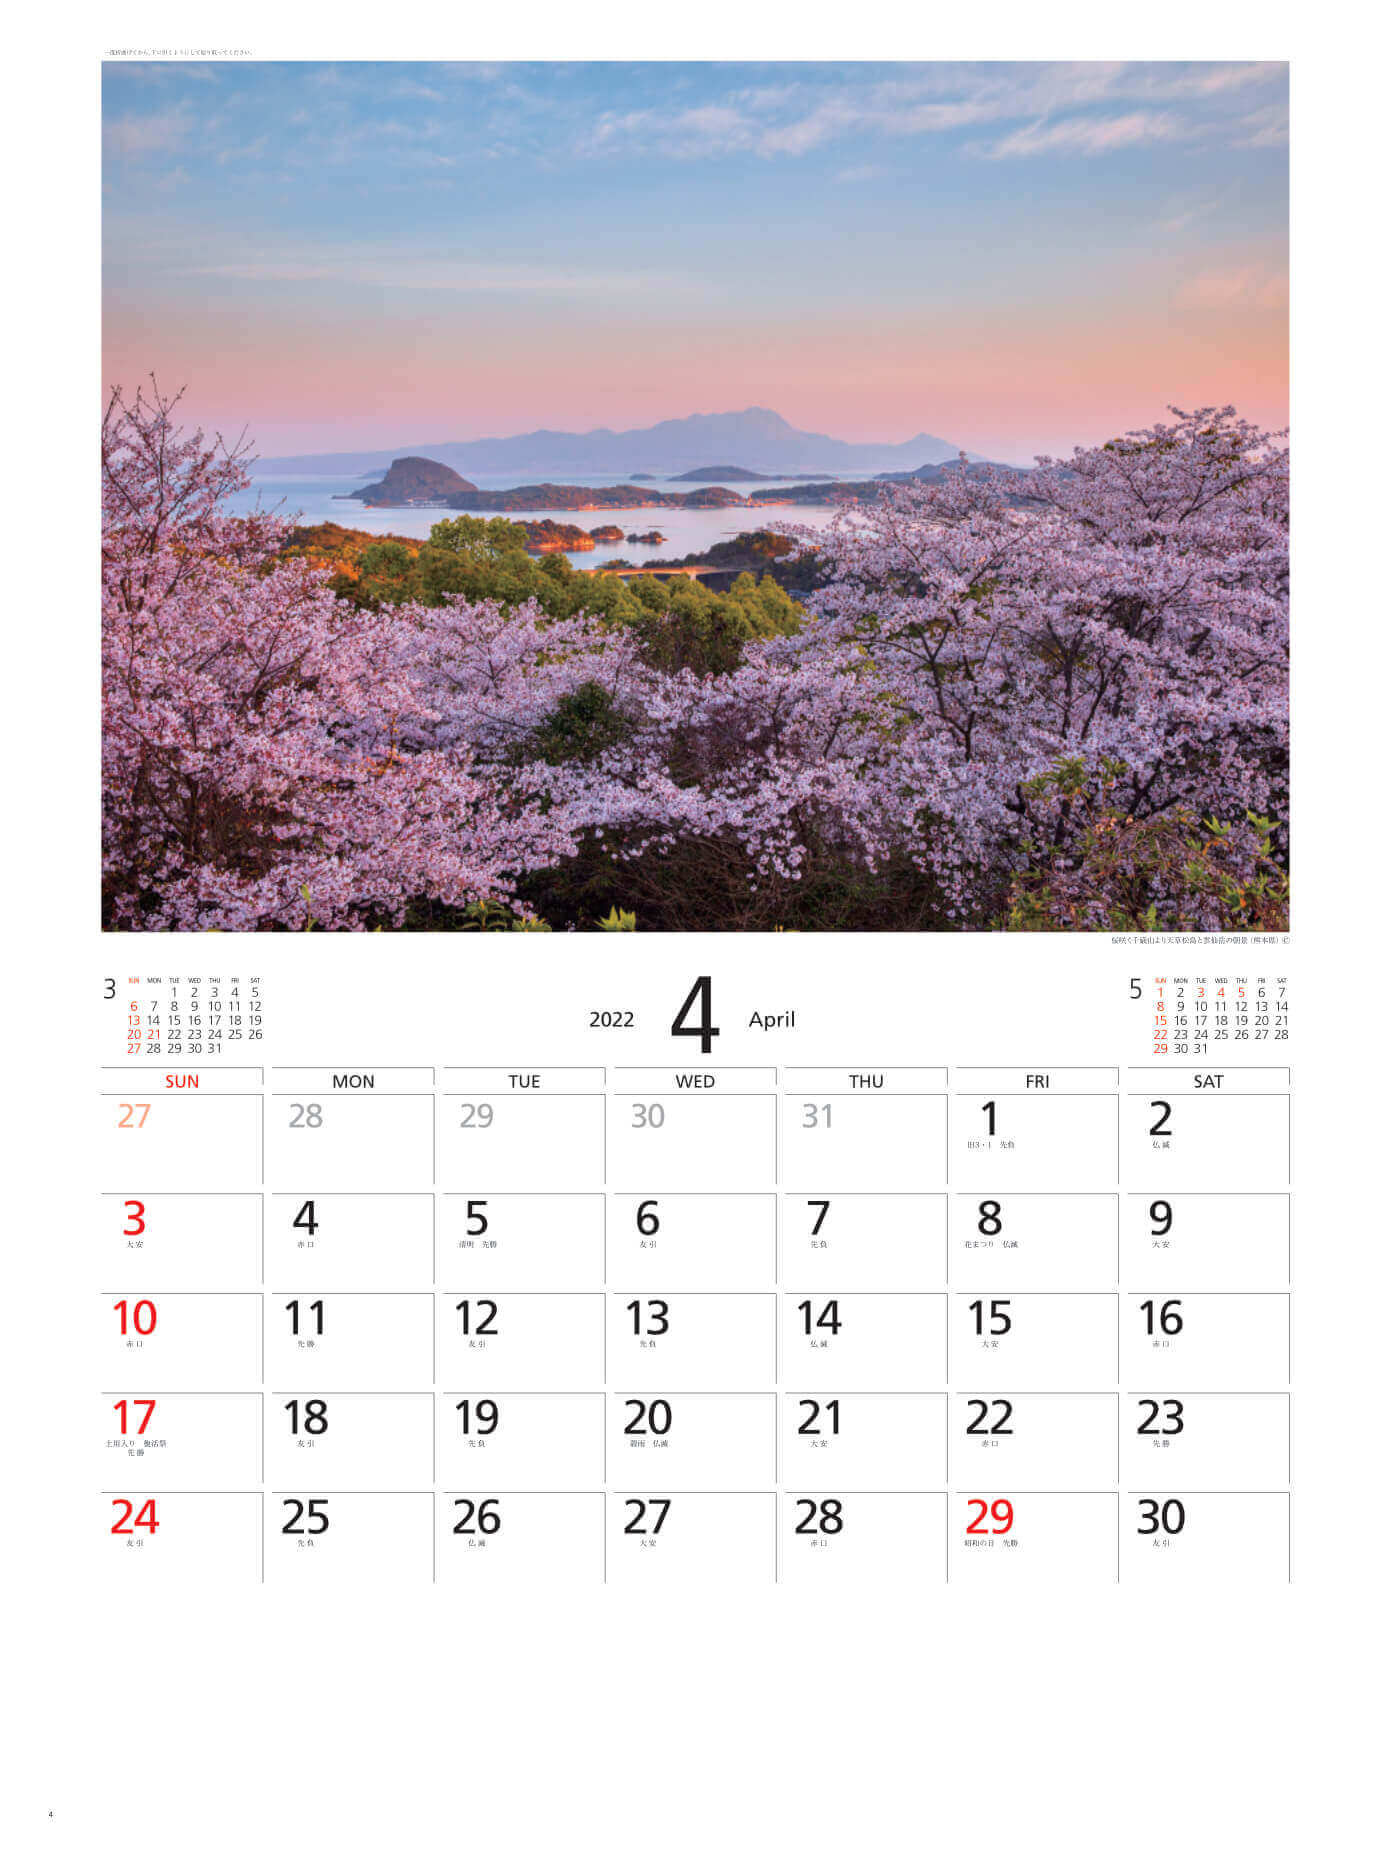 4月 天草松島と雲仙岳(熊本) 天地自然・森田敏隆写真集 2022年カレンダーの画像